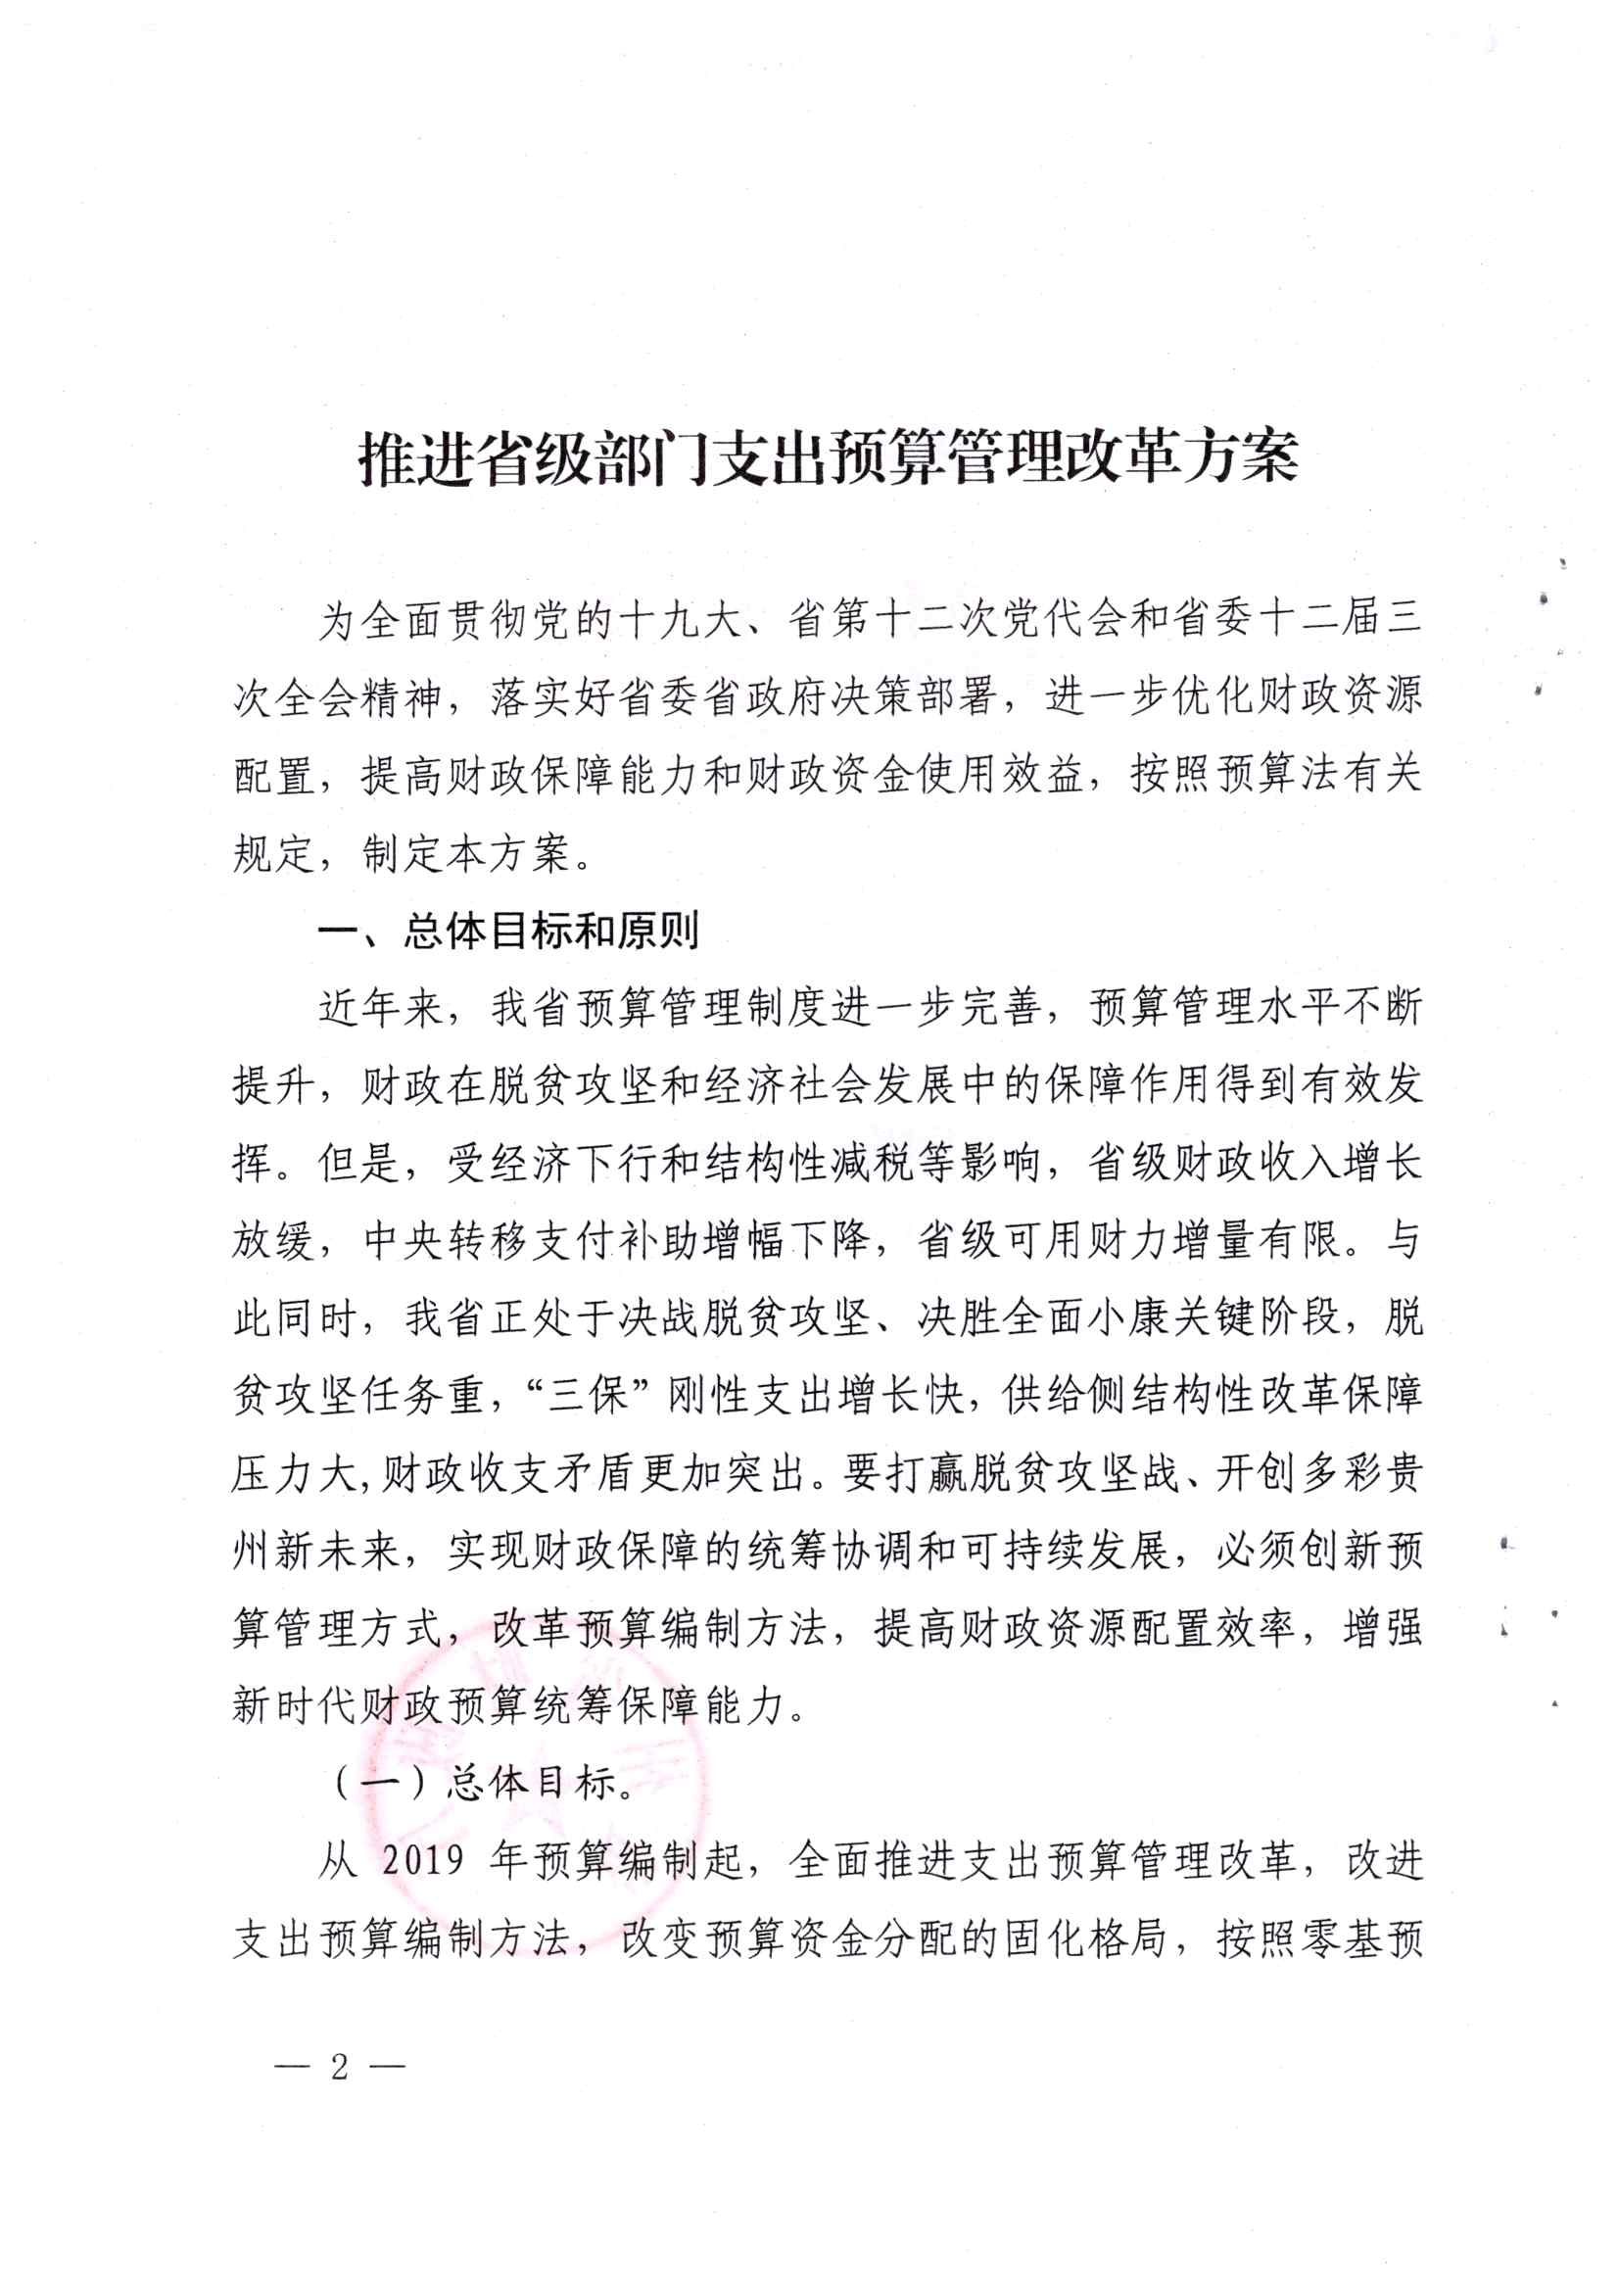 贵州省财政厅关于印发推进省级部门支出预算管理改革方案的通知_页面_2.jpg